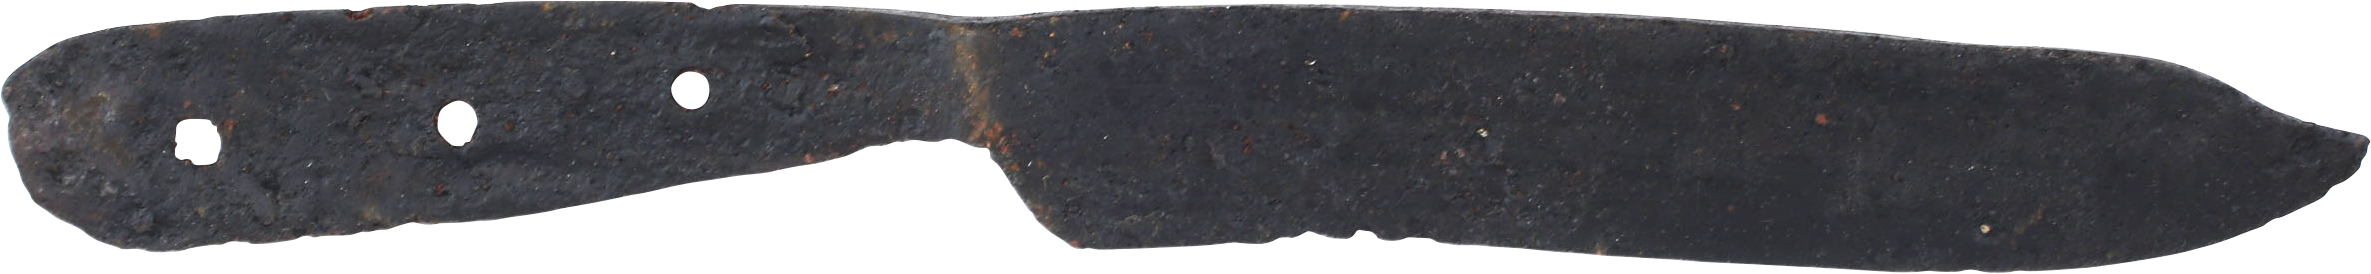 MEDIEVAL SIDE KNIFE C.1300-1500